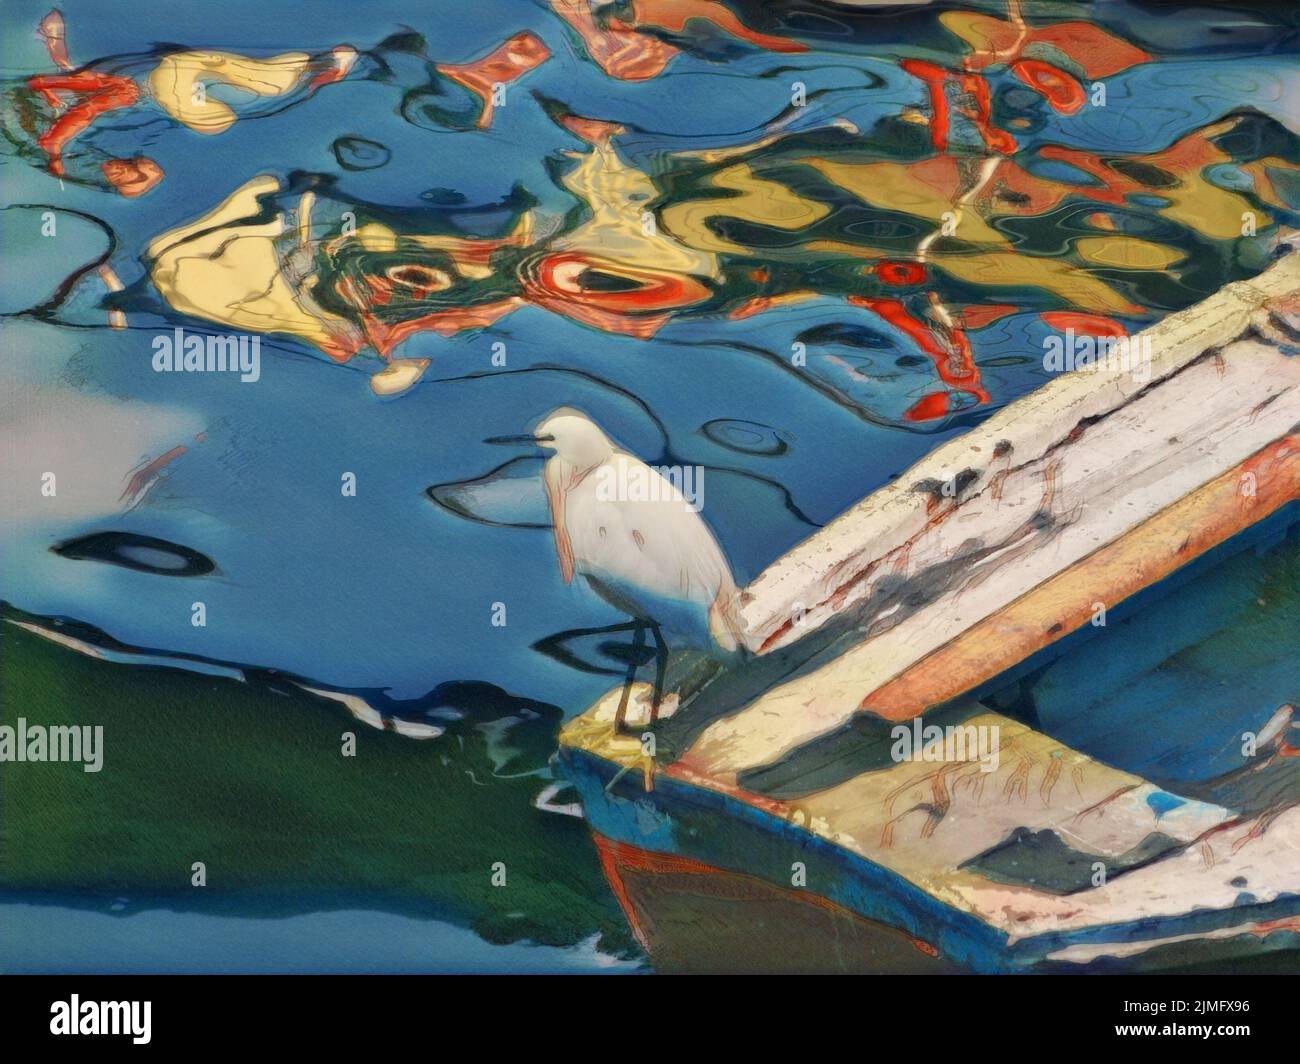 Ein Vogel mit weißem Gefieder steht auf einer Reihe mit abstrakten Formen in Farben, die sich im Wasser darunter widerspiegeln. Foto bearbeitet, um wie eine Illustration auszusehen. Stockfoto